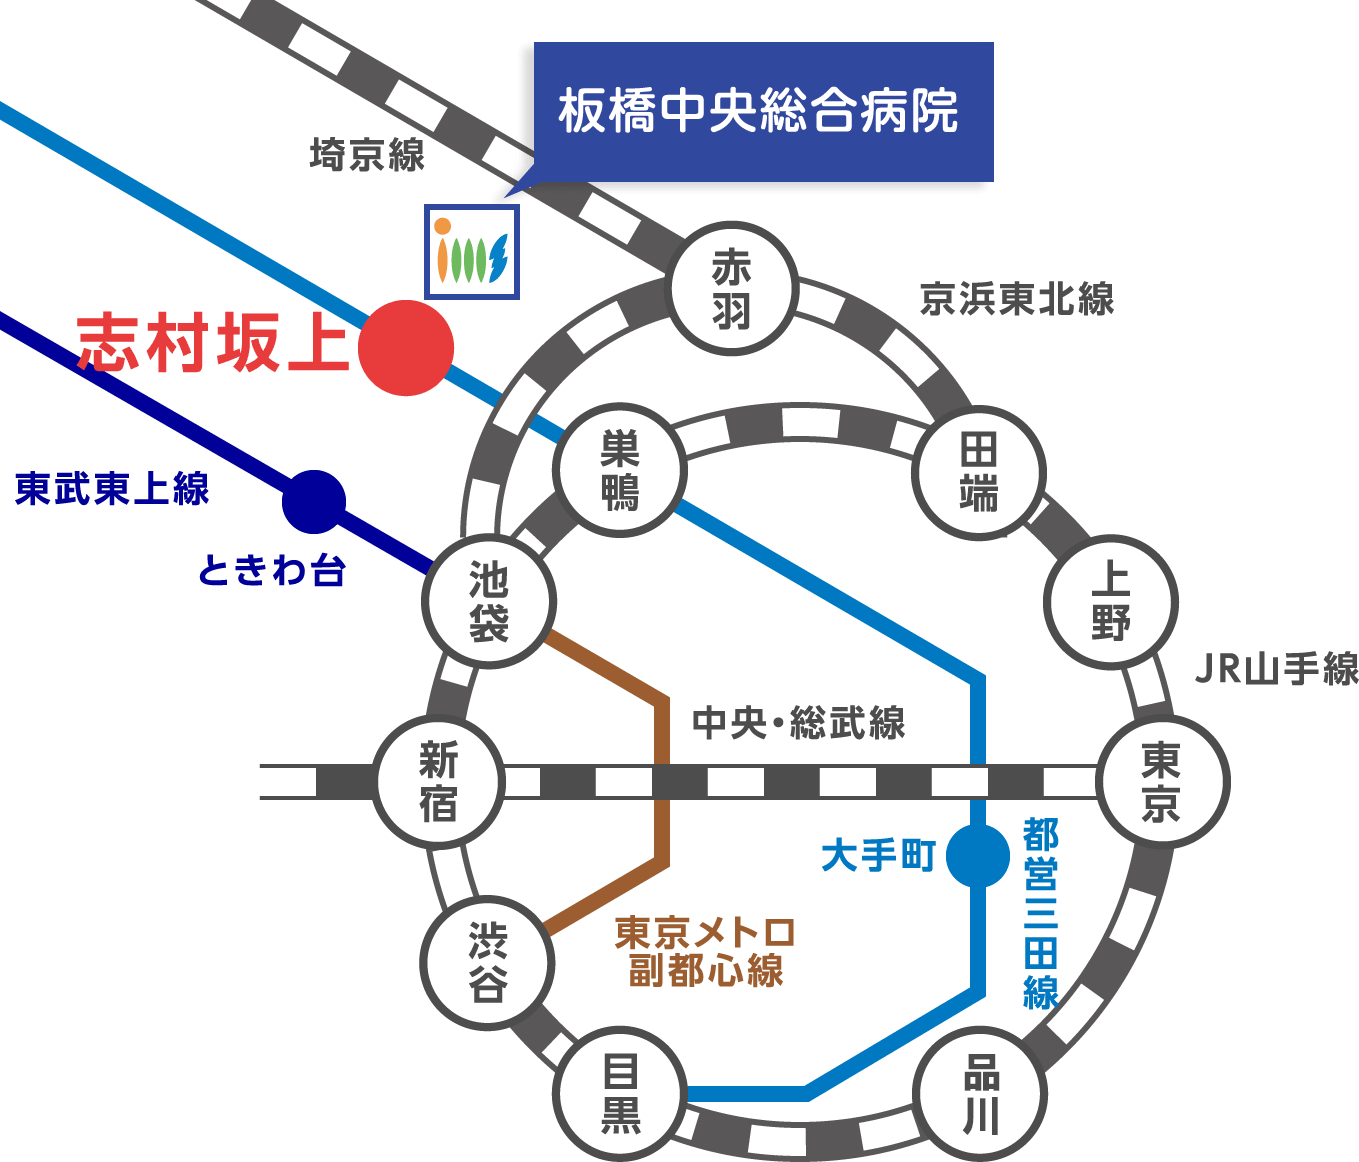 路線図 都営地下鉄三田線 「志村坂上駅」 下車 A1 / A3 出口より徒歩1分